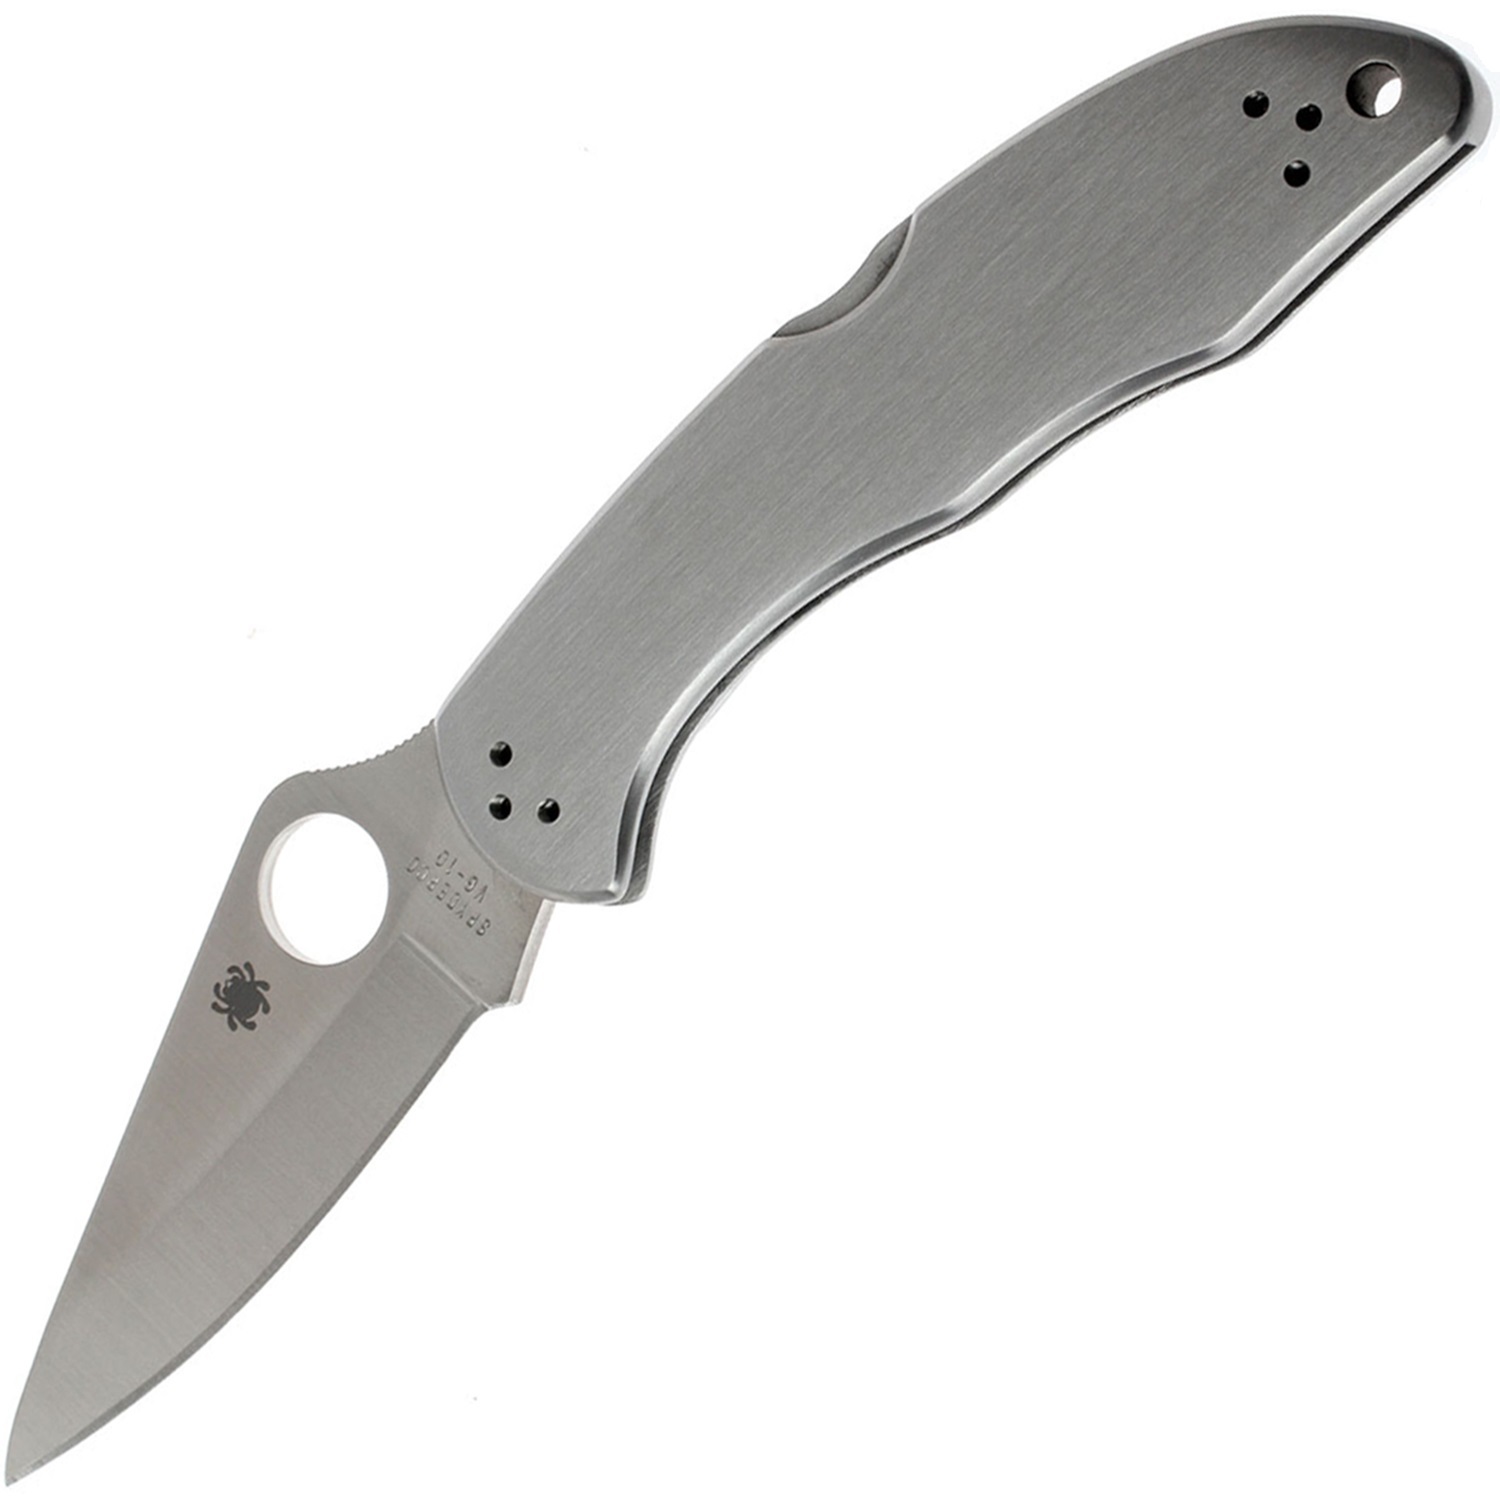 Складной нож Delica 4 - Spyderco C11P, сталь VG-10 Satin Plain, рукоять нержавеющая сталь - фото 1